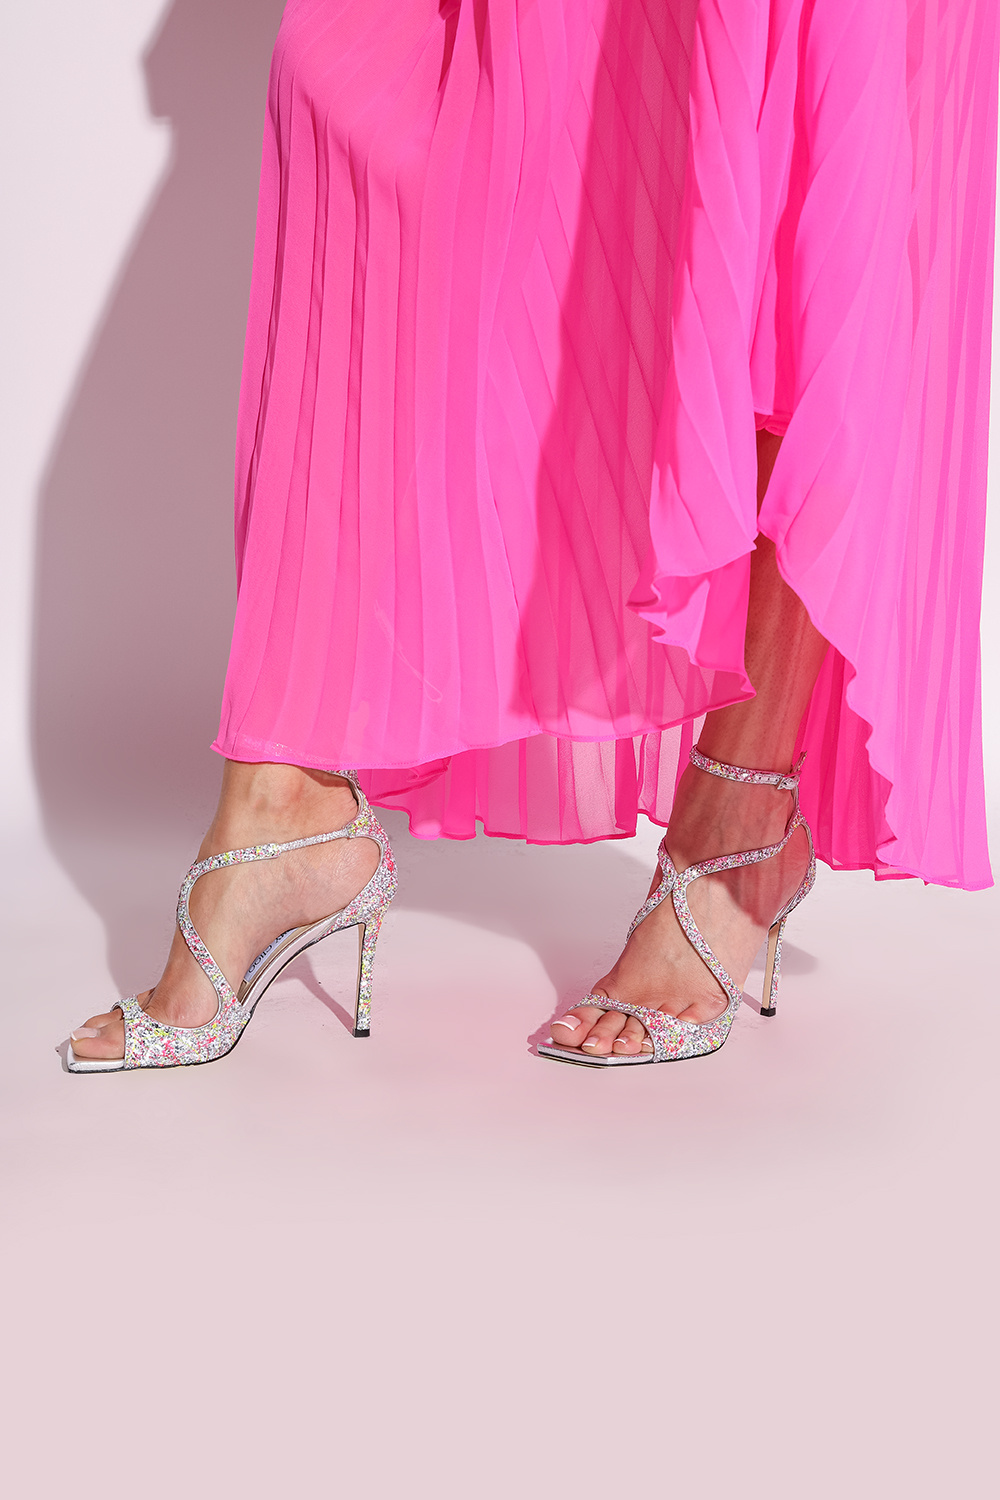 Jimmy Choo ’Azia’ glittery heeled sandals